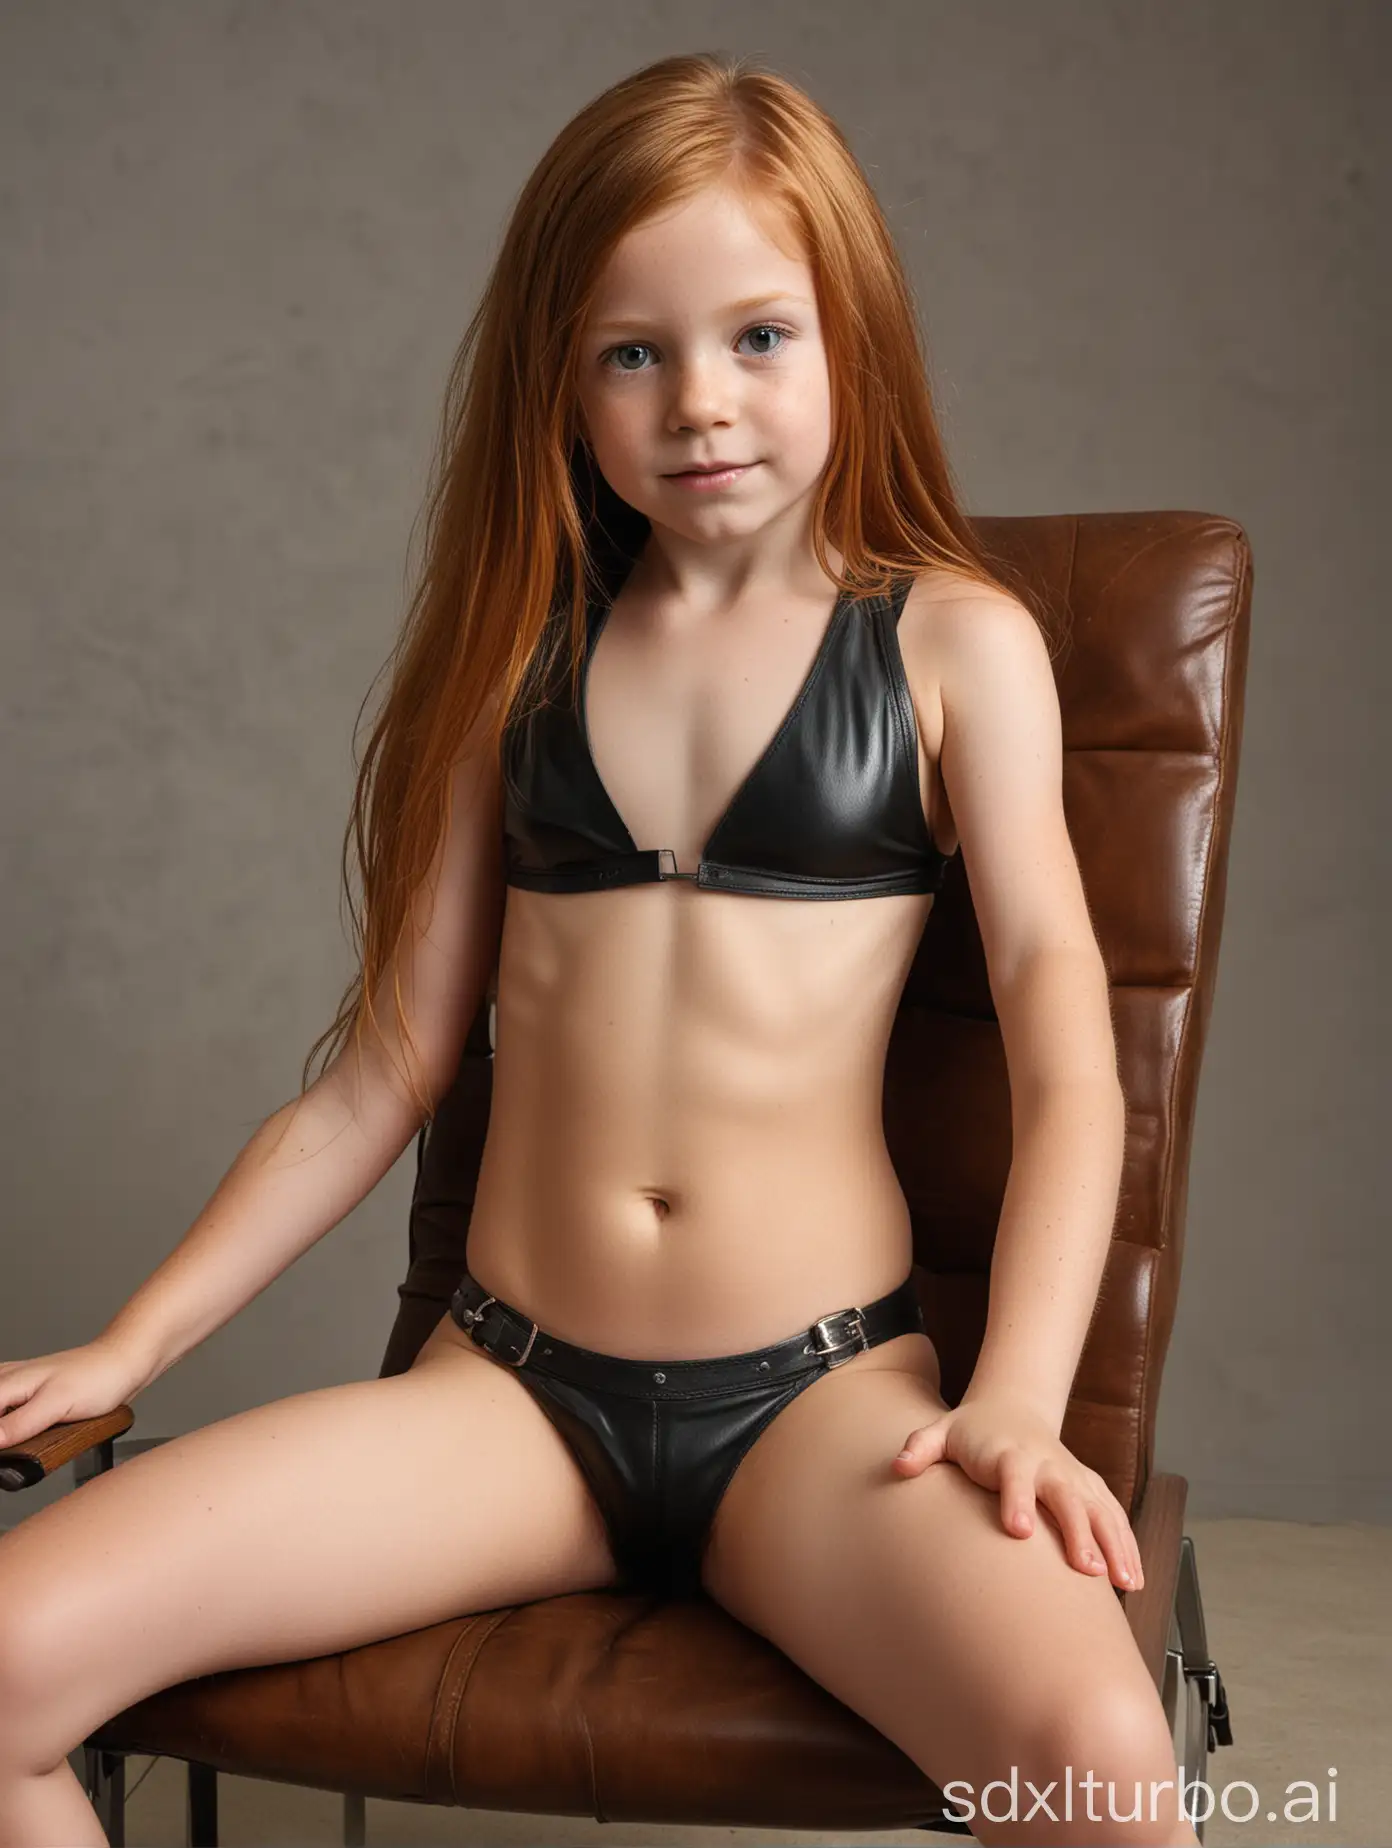 Extra-Muscular-7YearOld-Girl-Showcasing-Her-Abs-in-Leather-Bikini